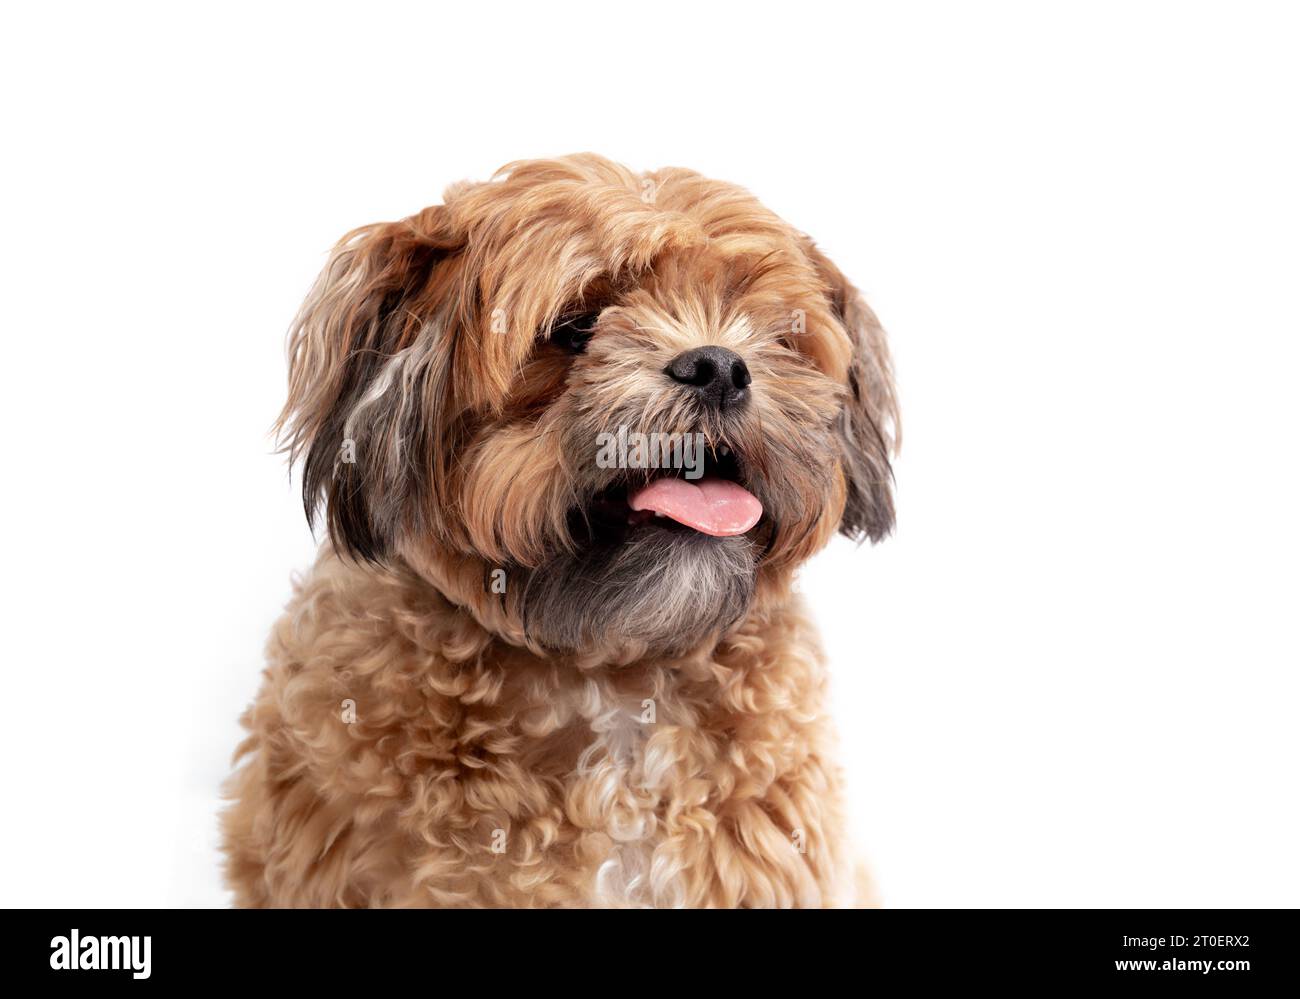 Isolierter Zuchon-Hund mit einer Zunge, die herausragt. Kleiner flauschiger brauner Hund, der in die Kamera blickt. 3 Jahre alter Shichon, Shih Tzu-Bichon Mix oder Stockfoto